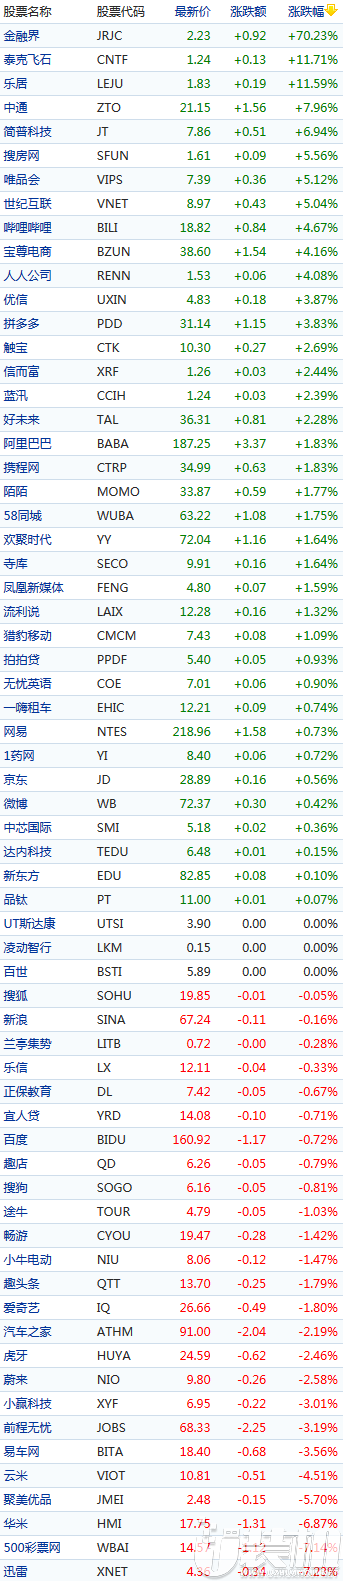 哔哩哔哩涨股4.67%报18.82美元